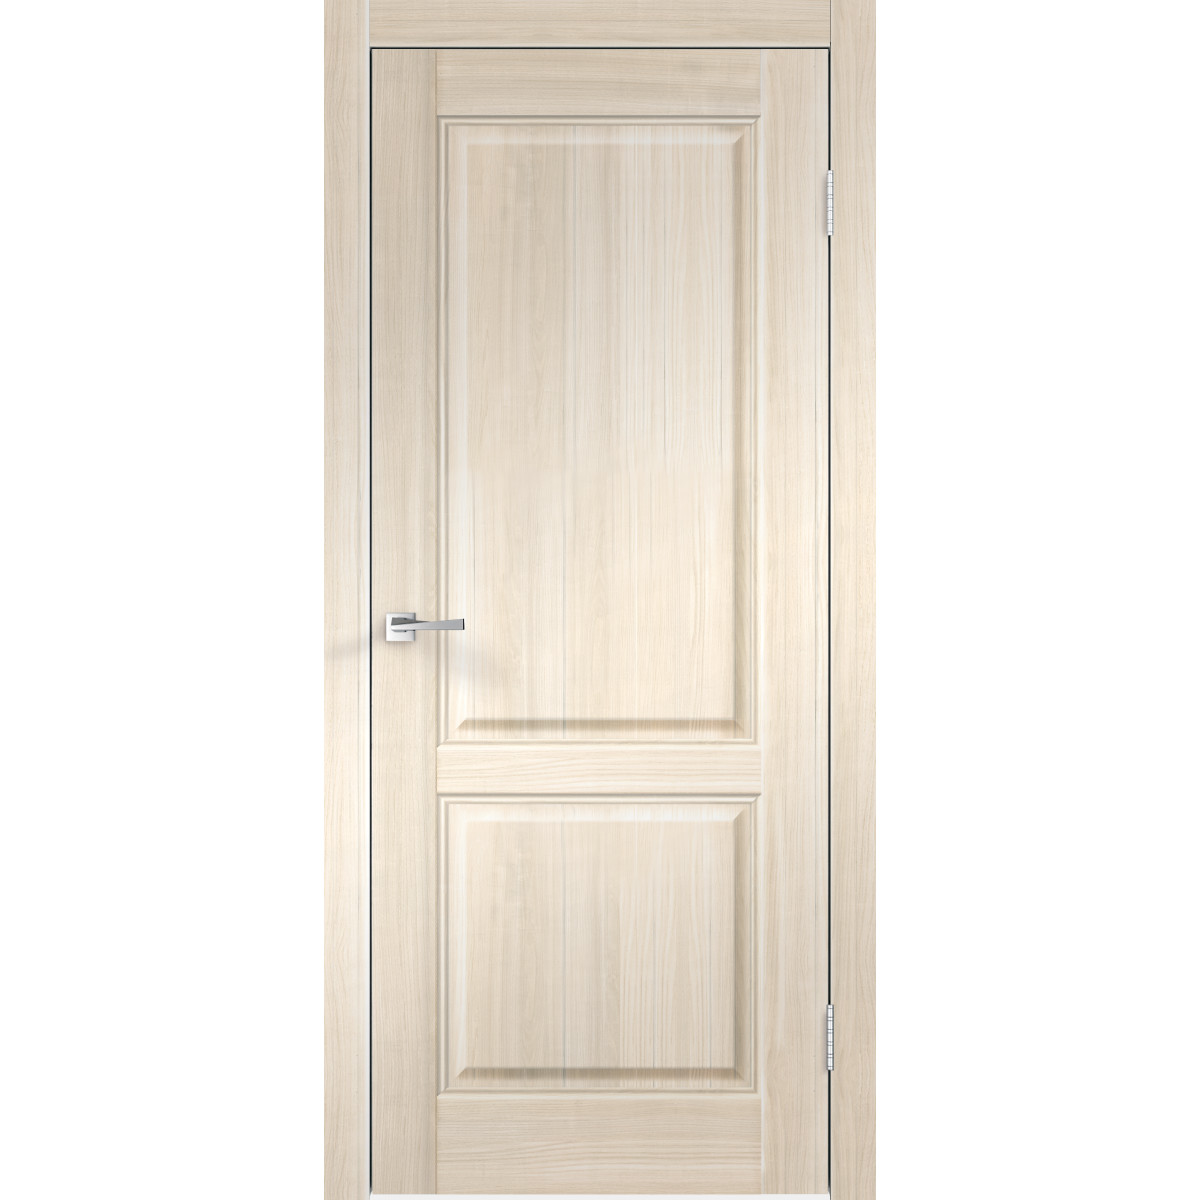 Дверь межкомнатная Вилла 2Р 60х200 см с фурнитурой, ПВХ, цвет японский ясень